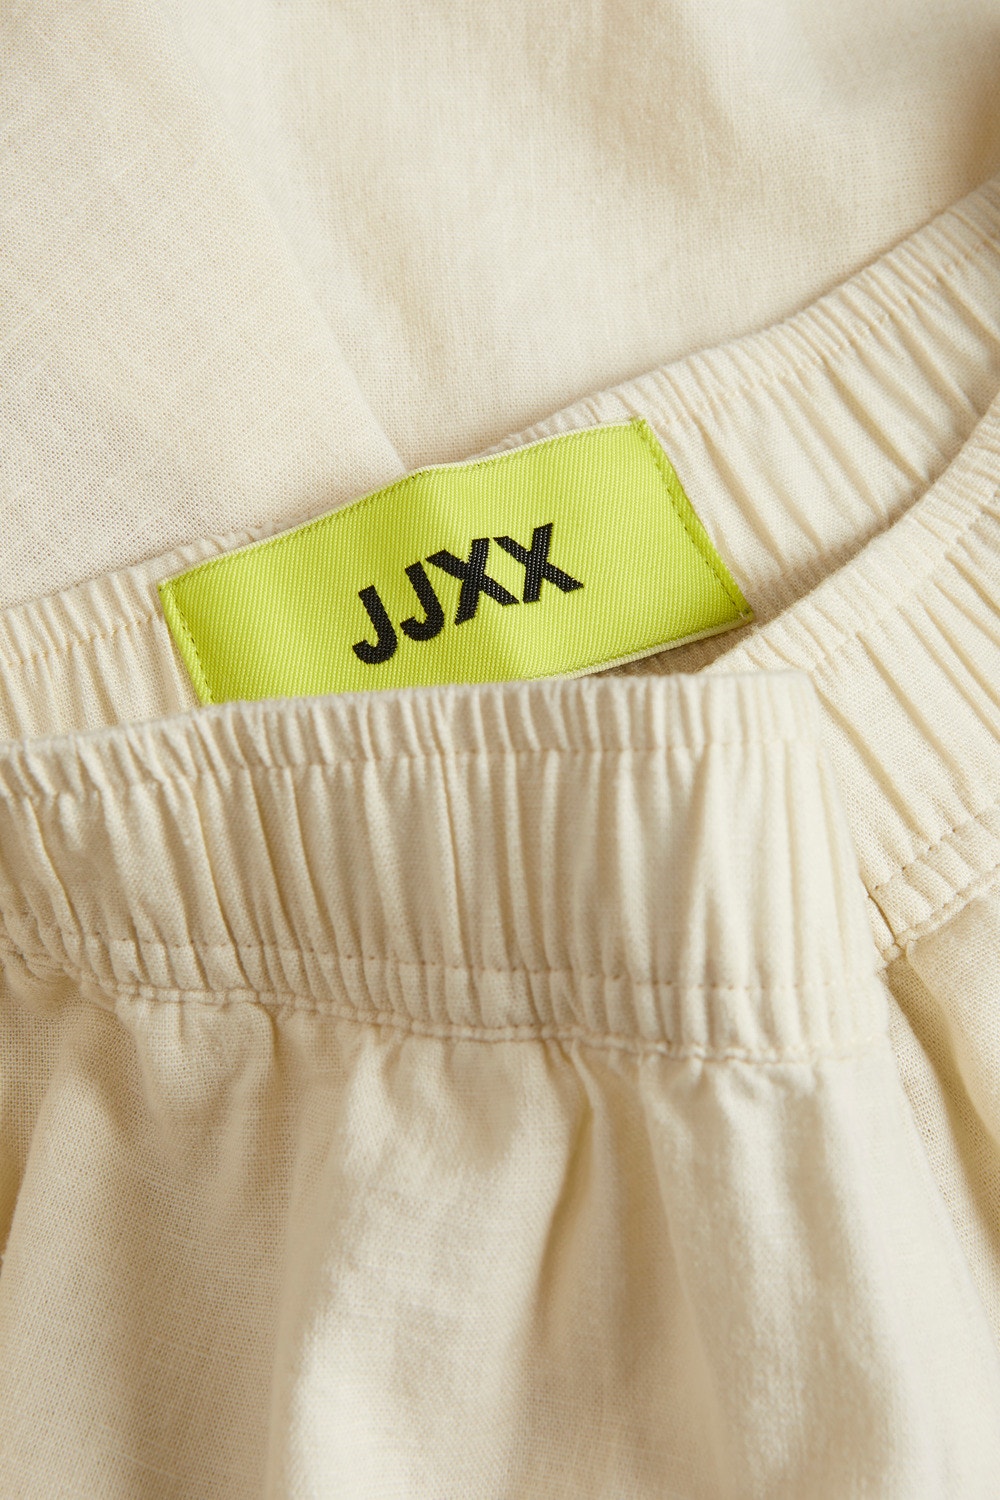 JJXX JXTINE Klassisk shorts -Seedpearl - 12235003